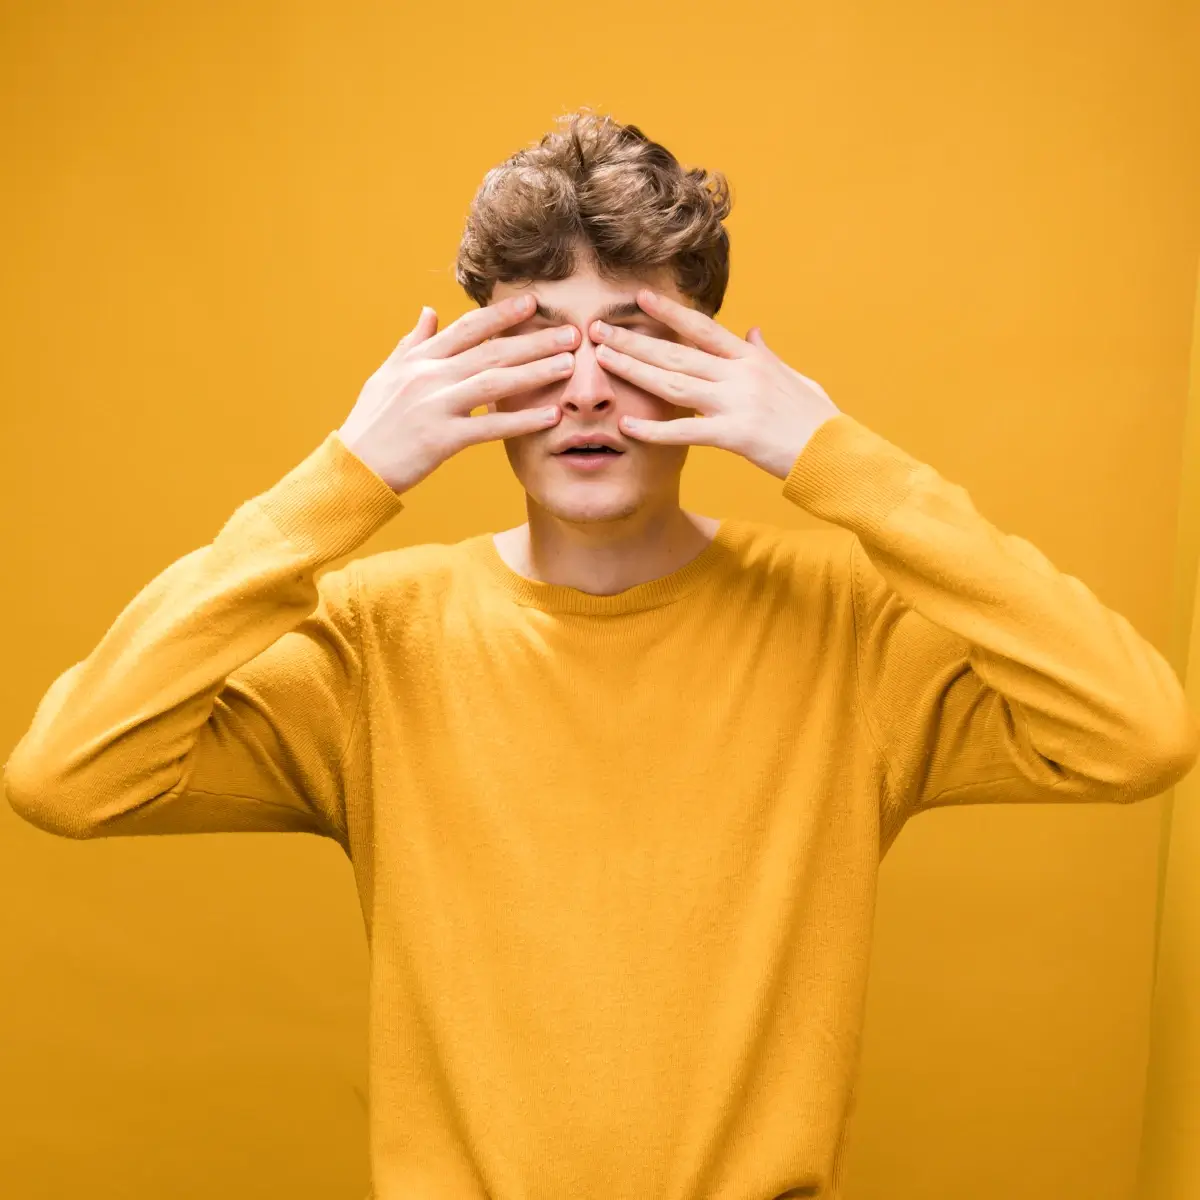 Contato visual no autismo: adolescente tapando os olhos. Tanto sua roupa, quando o fundo da imagem, tem tons de amarelo.